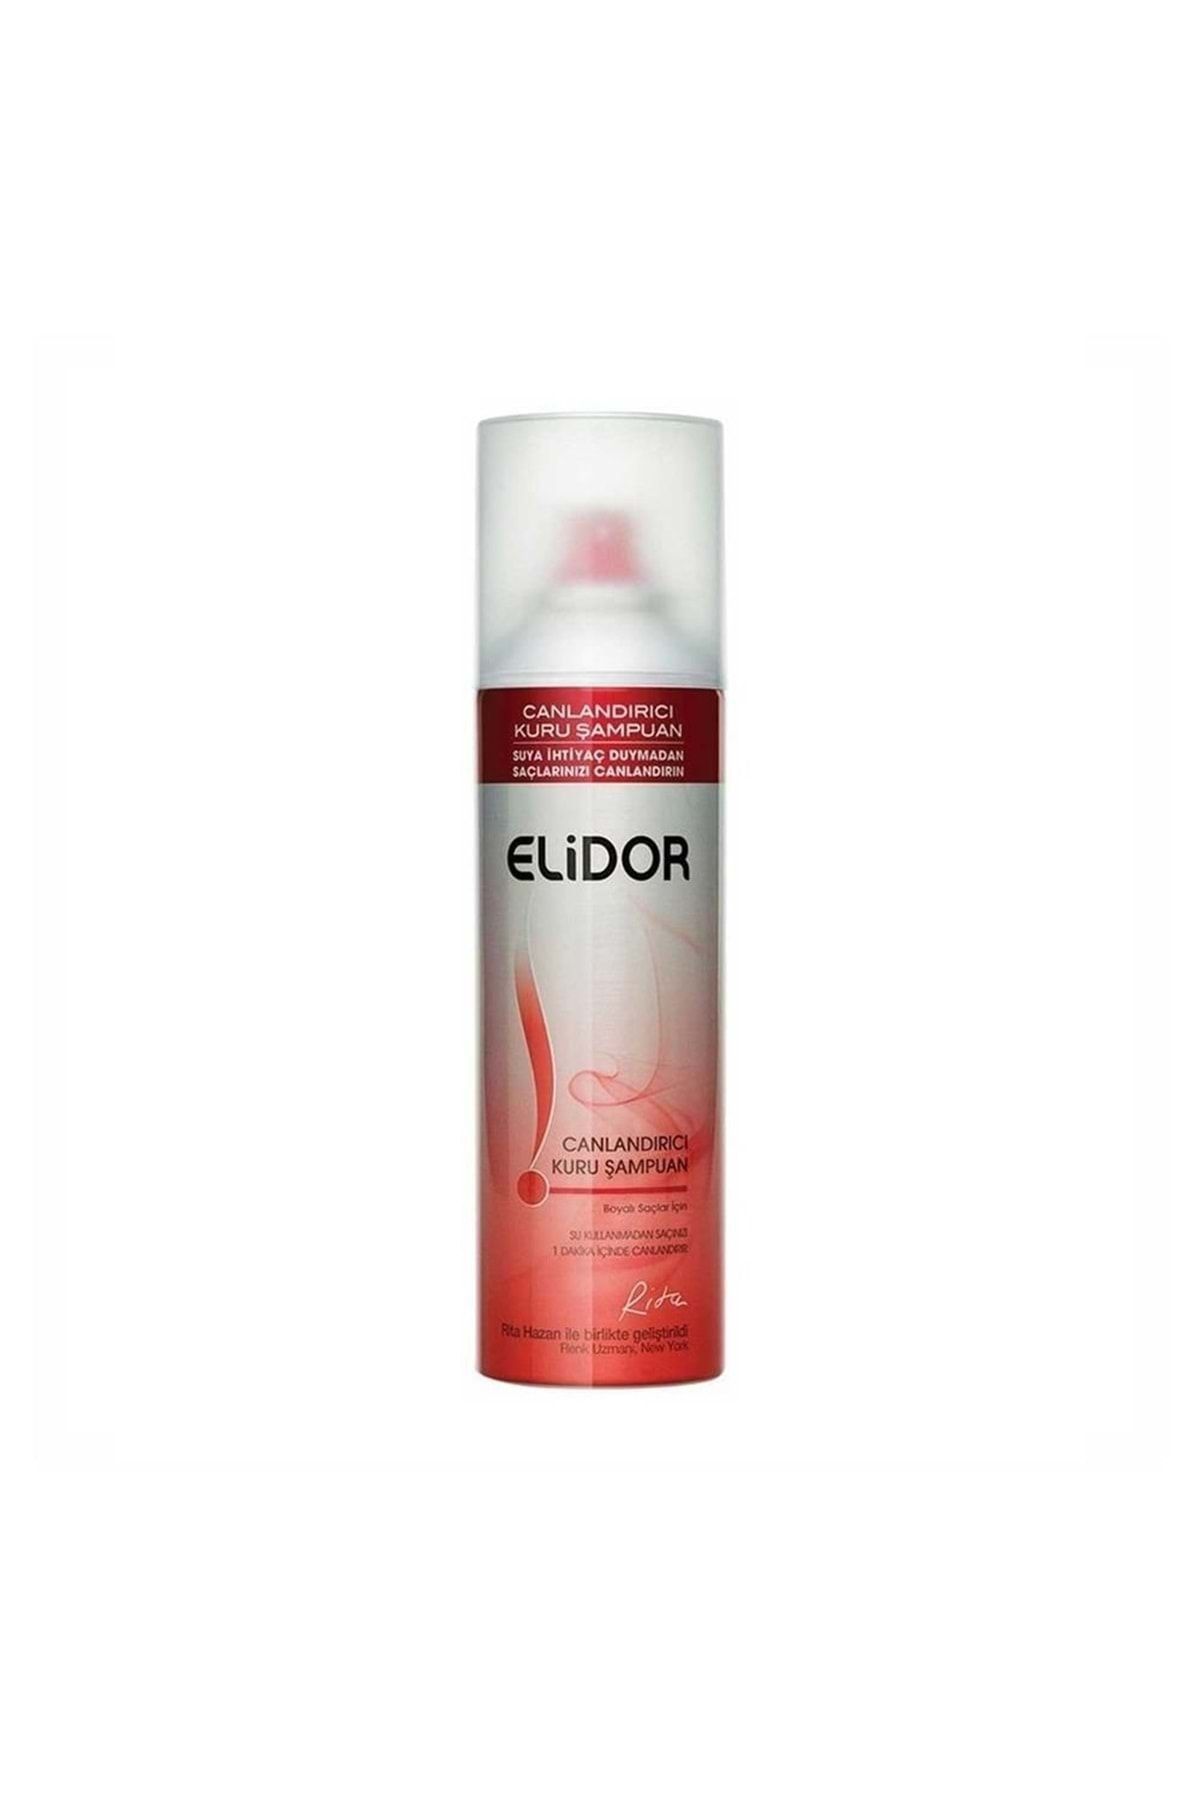 Elidor Boyalı Saçlar Için Canlandırıcı Kuru Şampuan 250 ml 8710908132414